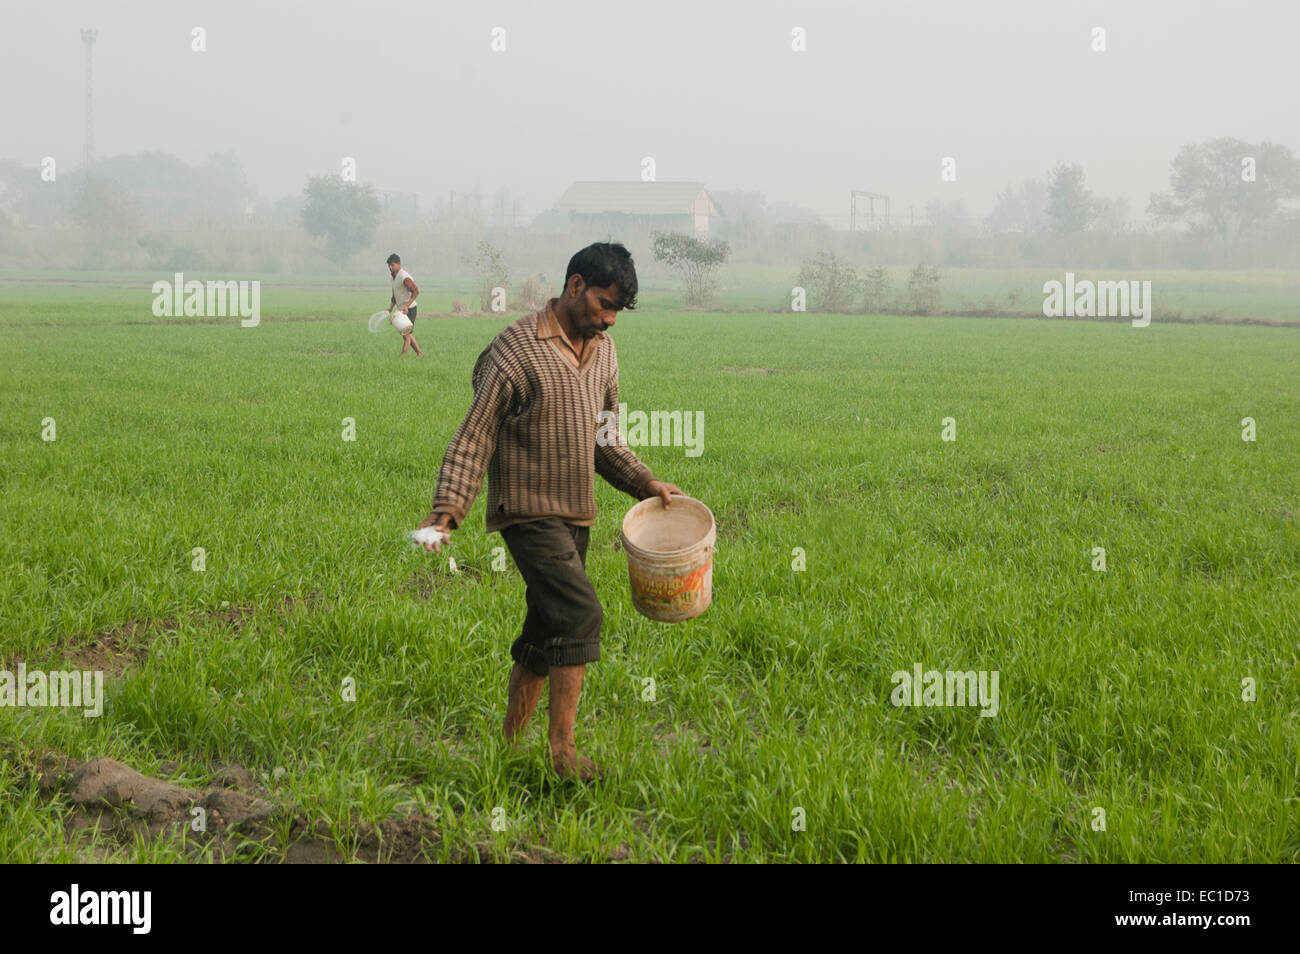 1 Indian Farmer Working in Farm Stock Photo